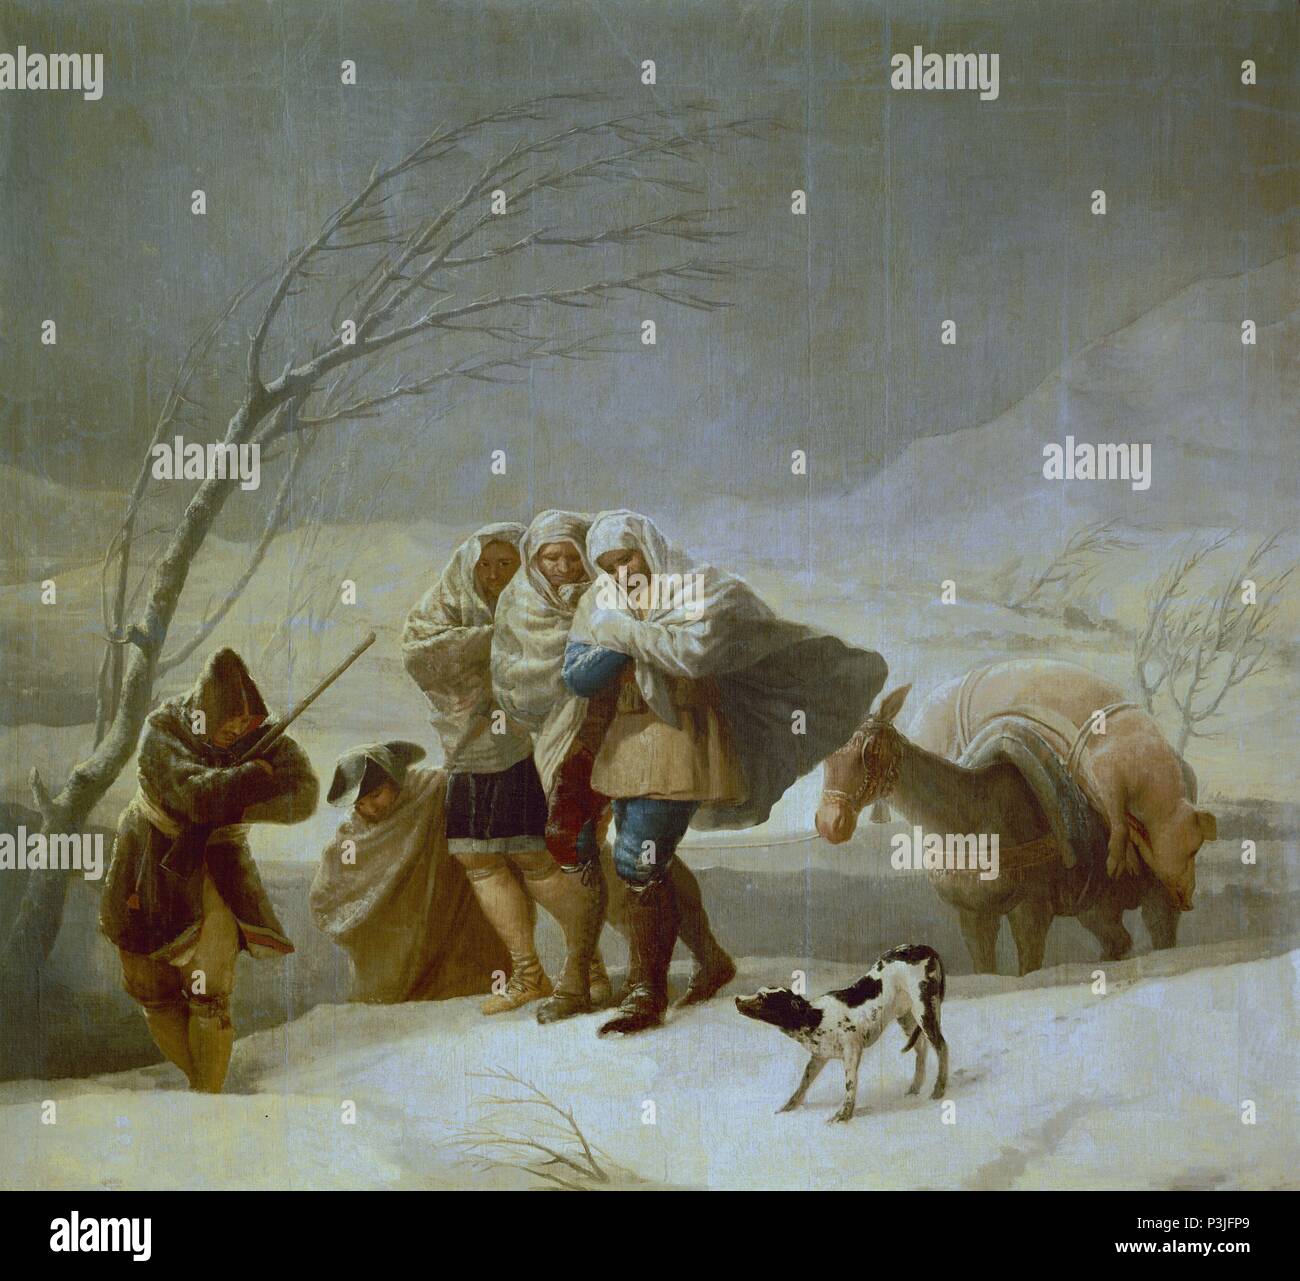 "La tempête de neige, ou d'hiver", 1786, huile sur toile, 275 cm x 293 cm, P00798. Auteur : Francisco de Goya (1746-1828). Emplacement : Museo del Prado-PINTURA, MADRID, ESPAGNE. Banque D'Images